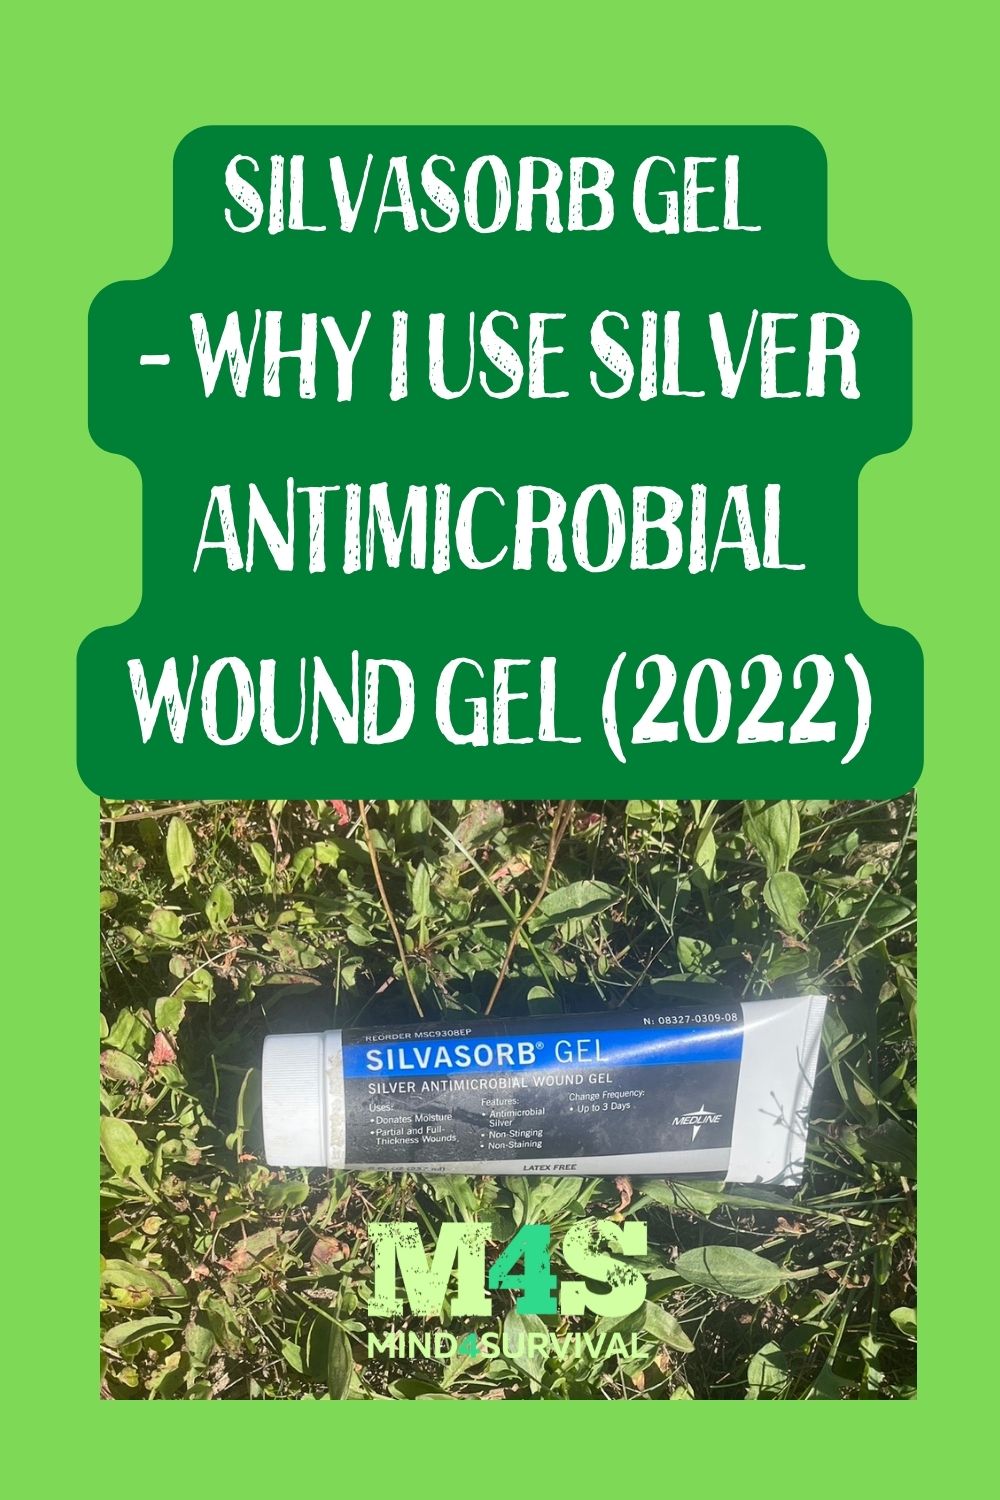 Silvasorb Gel - Why I Use Silver Antimicrobial Wound Gel (2022)